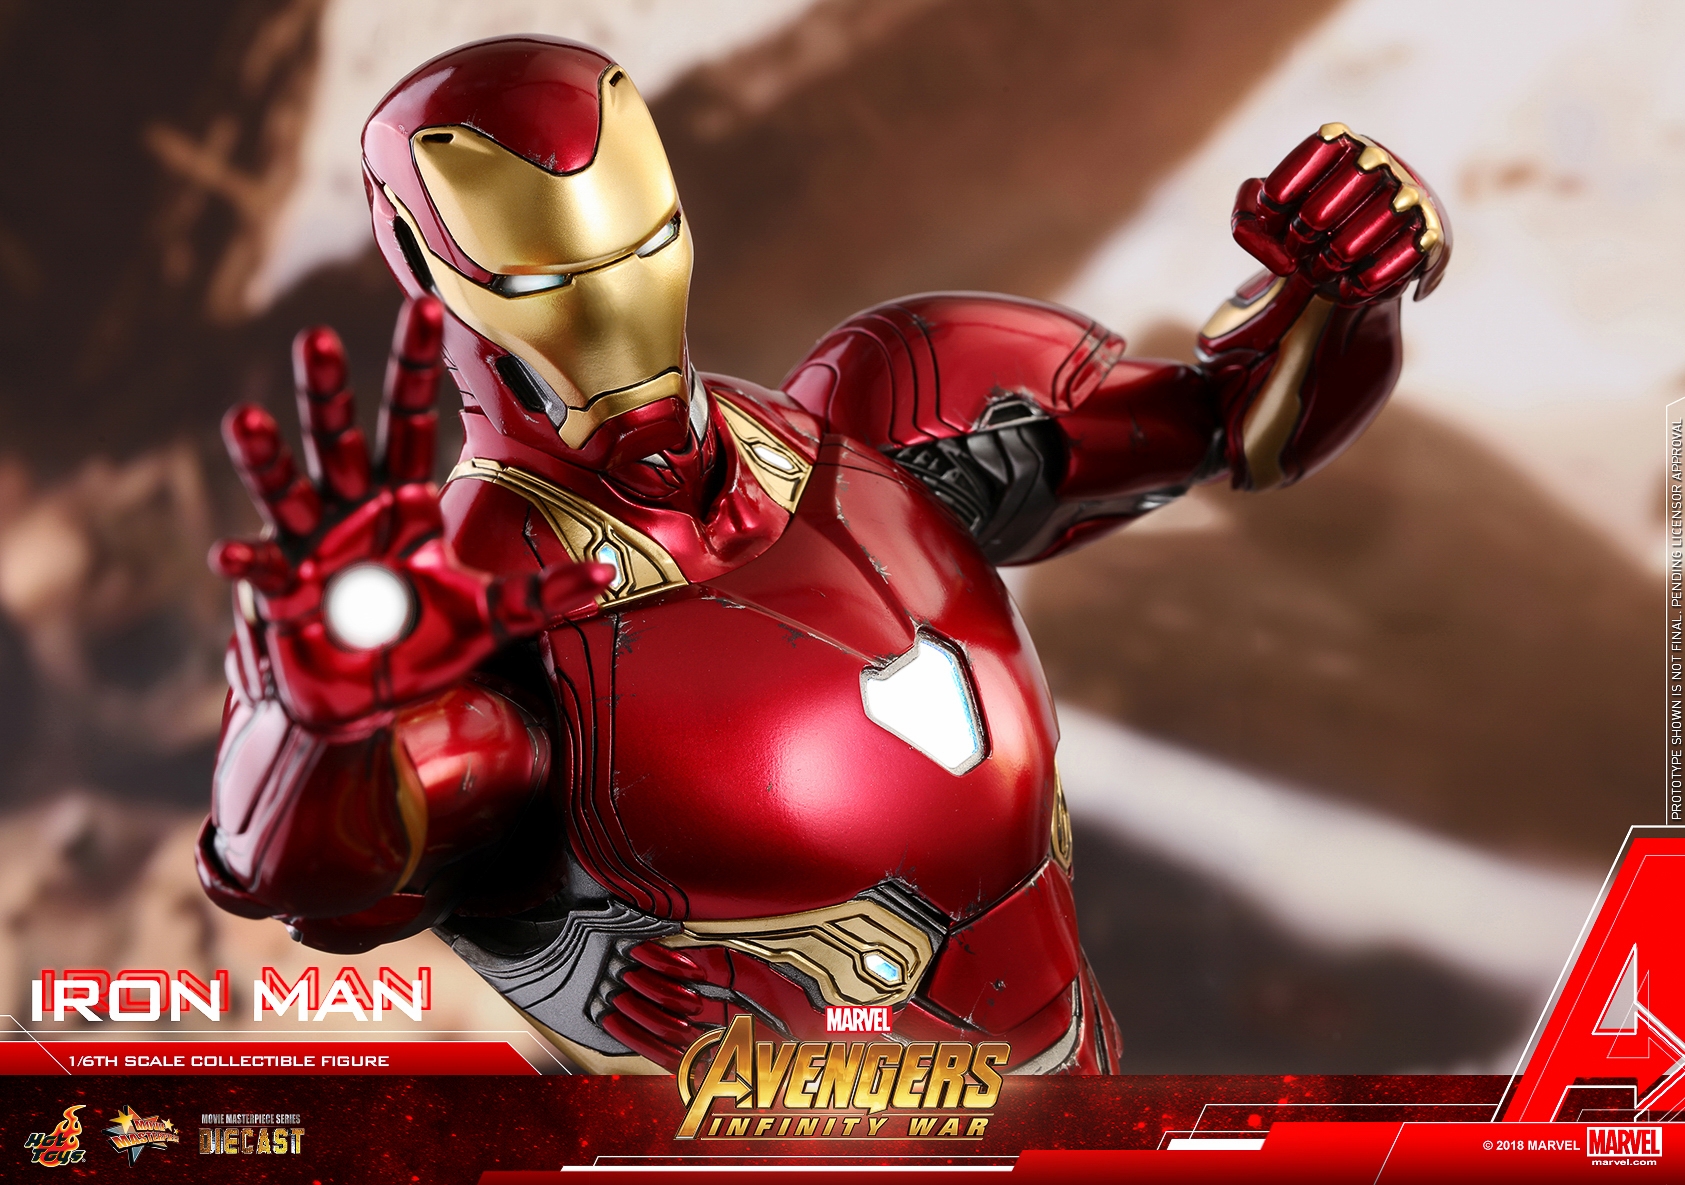 Hot-Toys-MMS473D23-Avengers-Infinity-War-Iron-Man-Collectible-Figure-027.jpg